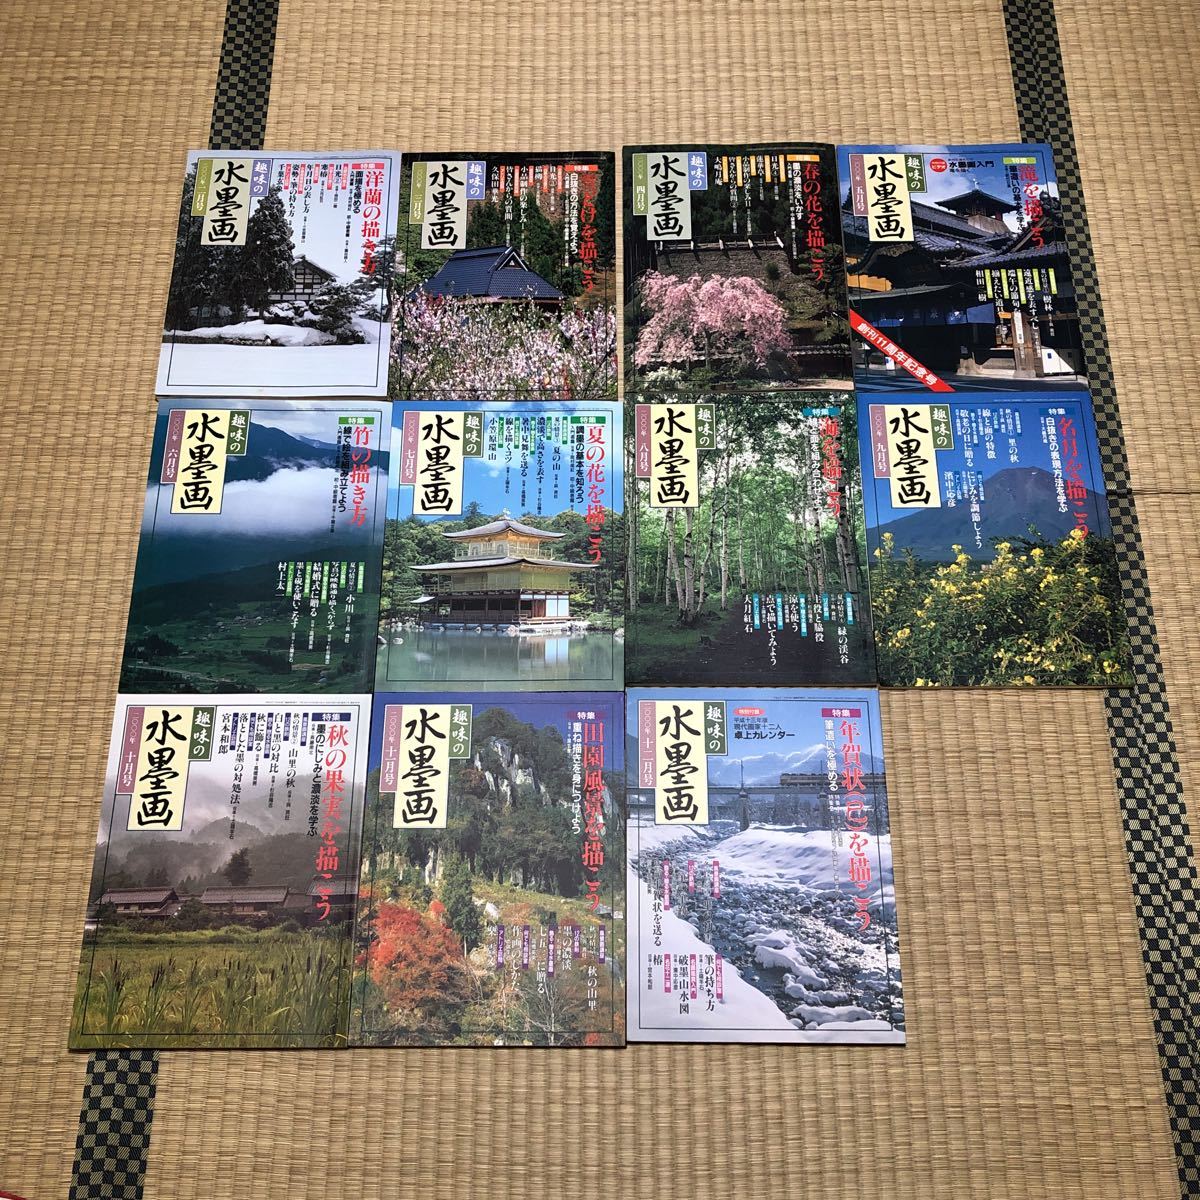 هواية الرسم بالحبر من فبراير 2000 إلى ديسمبر 2000 مجموعة مكونة من 11 مجلدًا المركز الياباني للتعليم الفني, عمل فني, تلوين, الرسم بالحبر